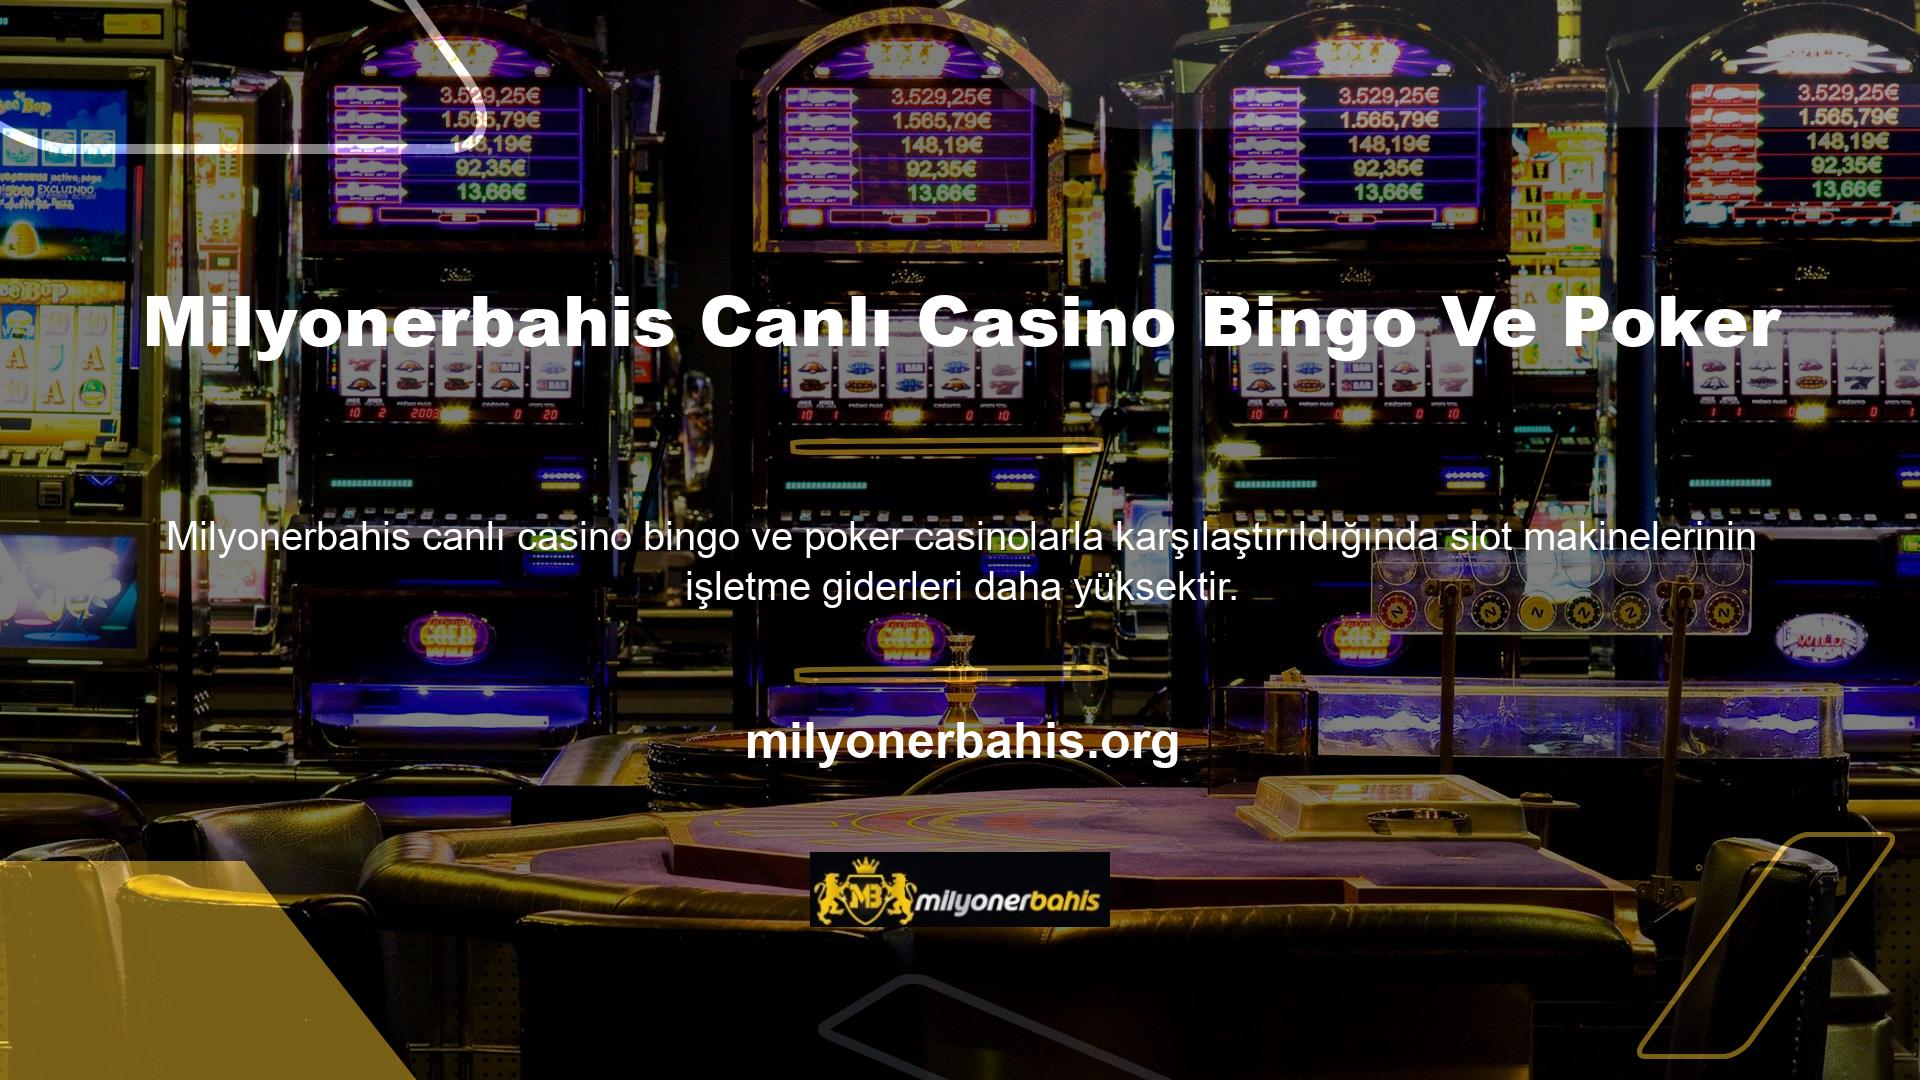 Sitede hem canlı casino oyunları hem de bahisler mevcuttur